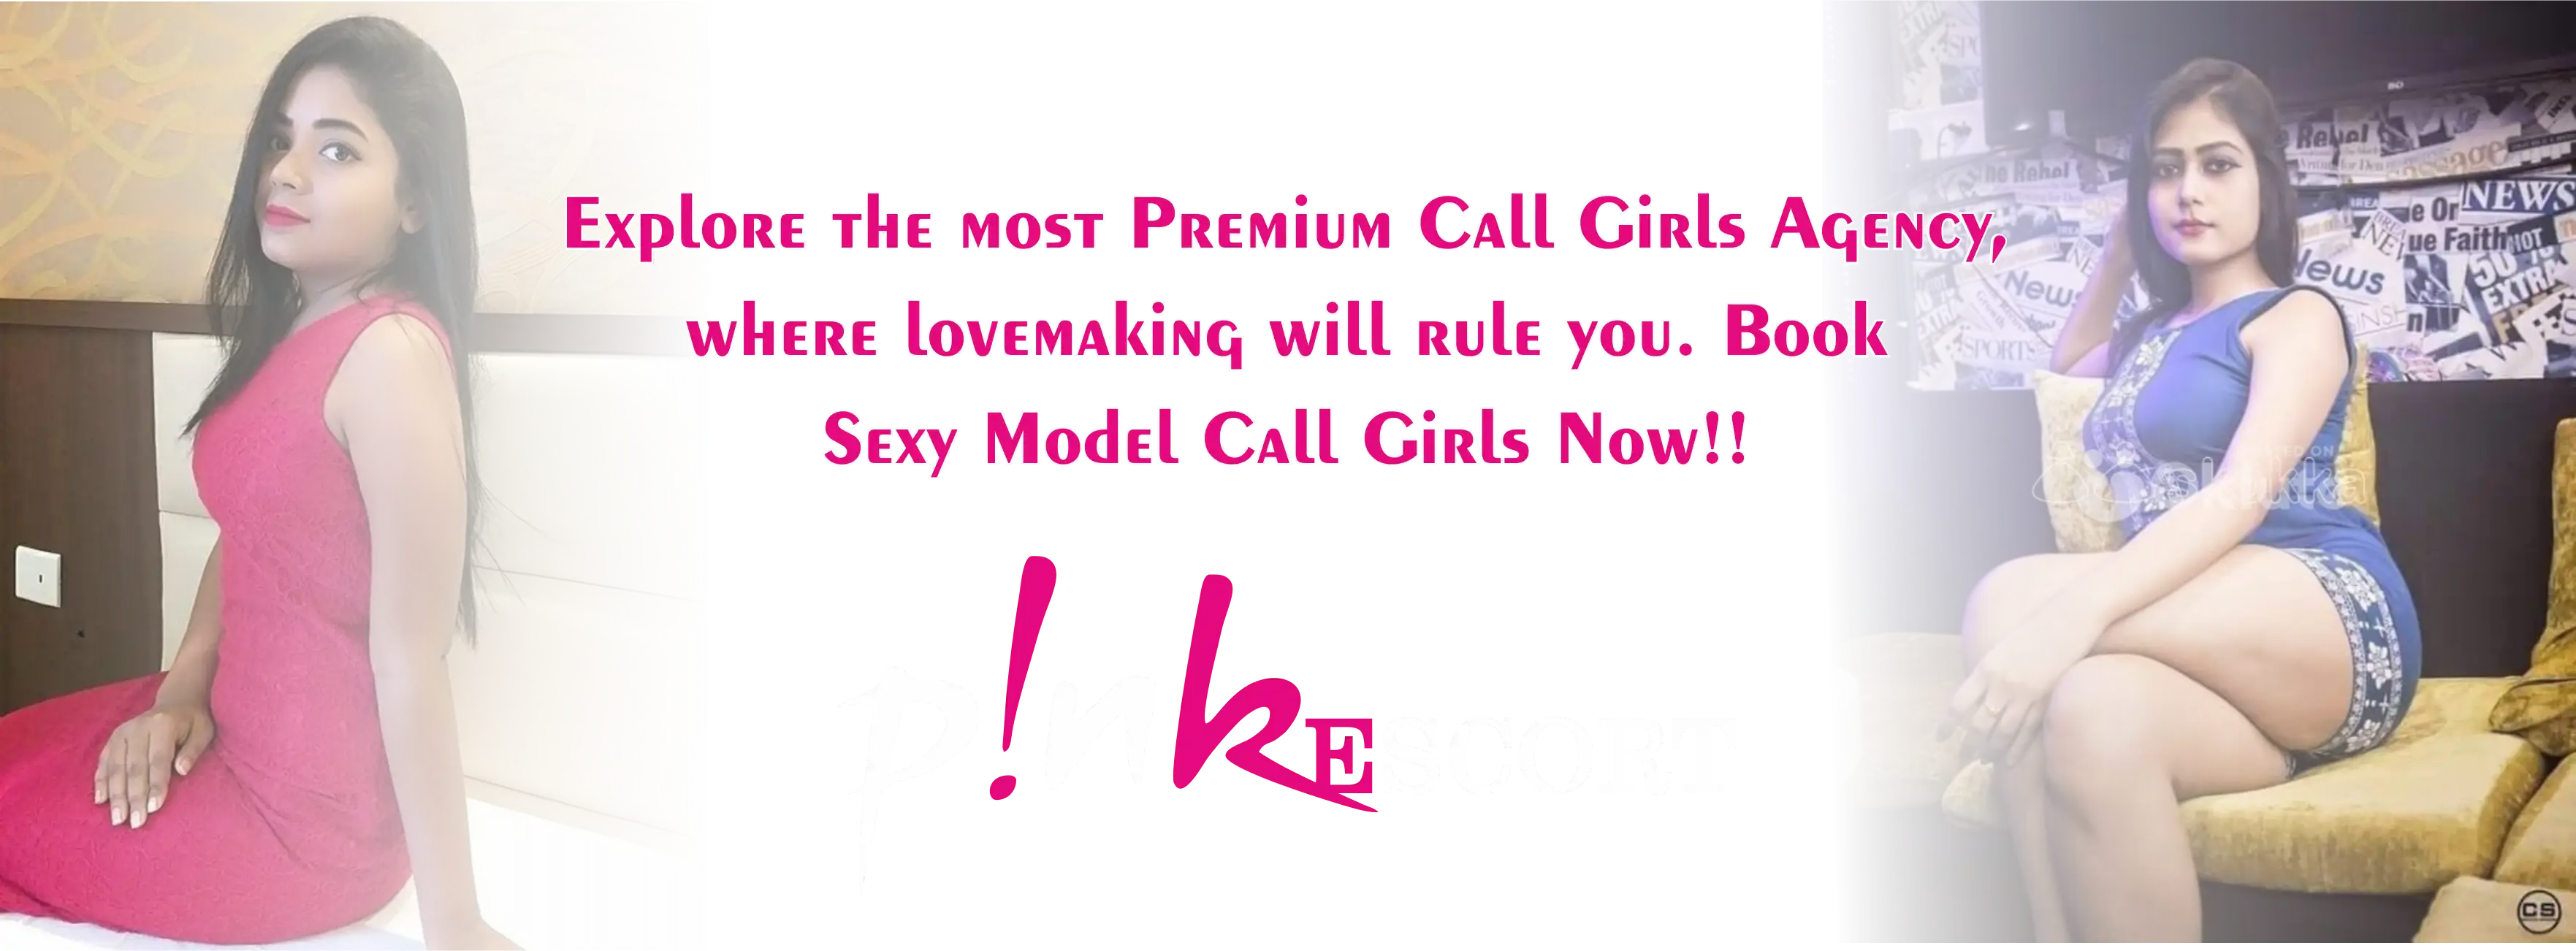 pinkescort call girl